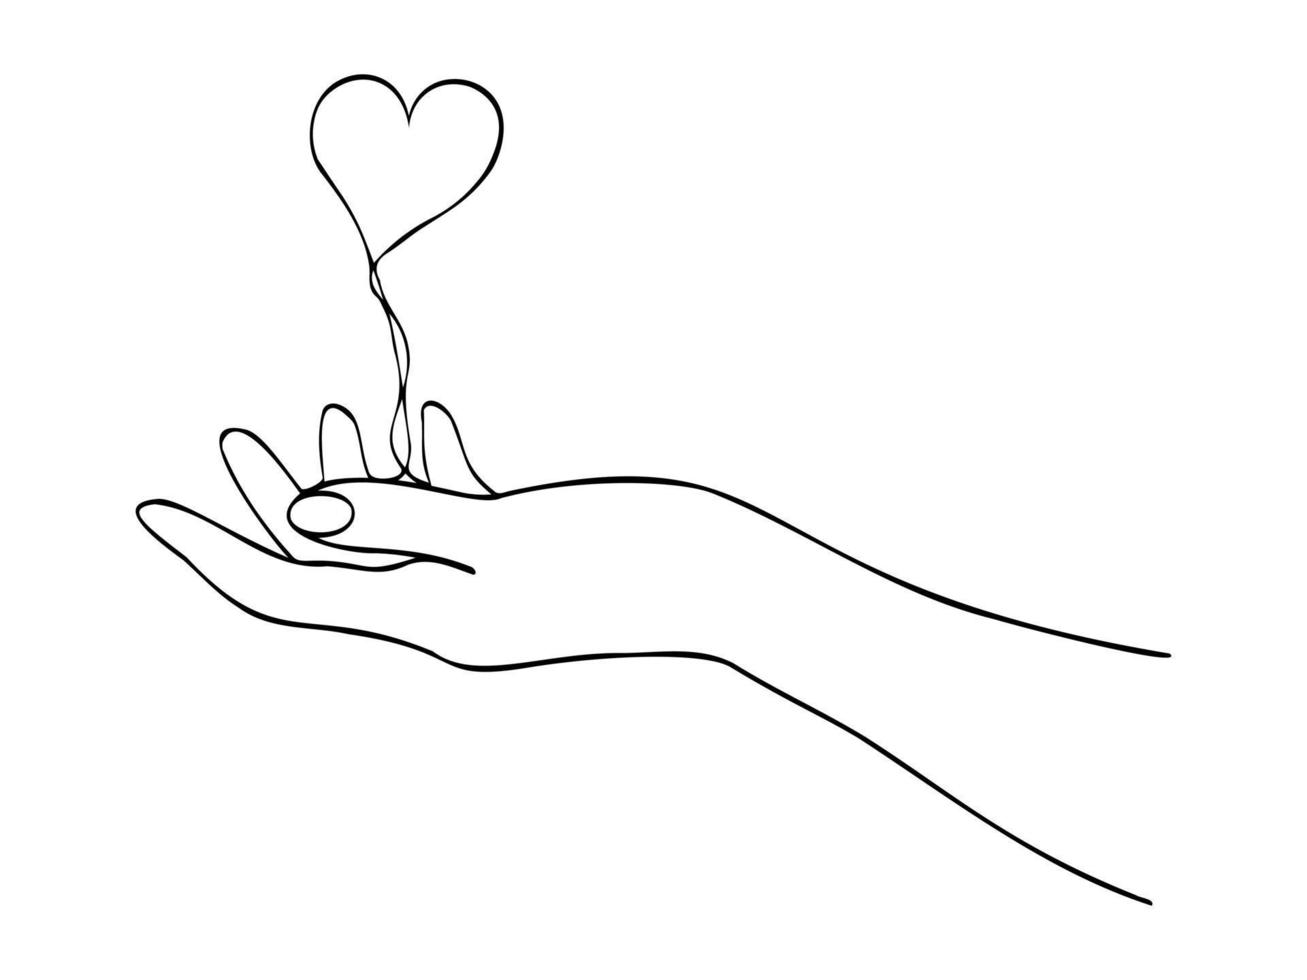 dessin continu d'une ligne avec la main et le coeur. main tenant le coeur. illustration vectorielle. dessin au trait noir sur fond blanc. vecteur